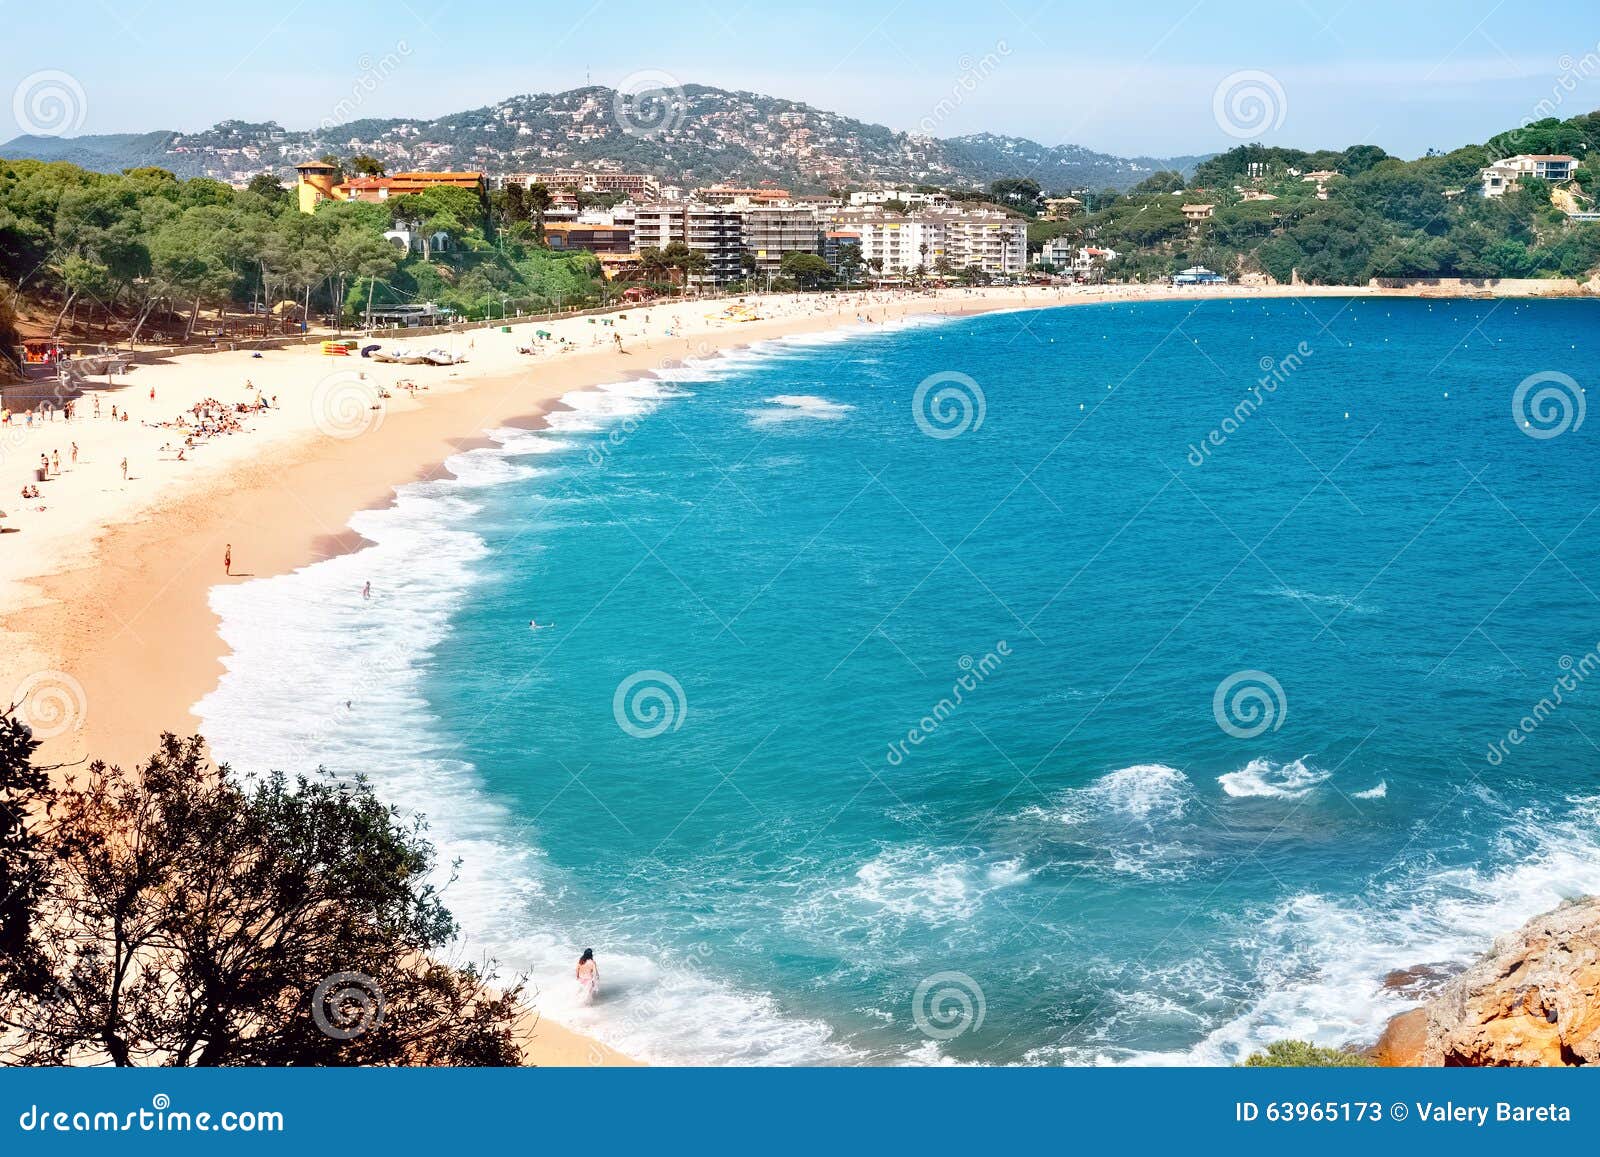 fenals beach at lloret de mar. costa brava, catalonia, spain